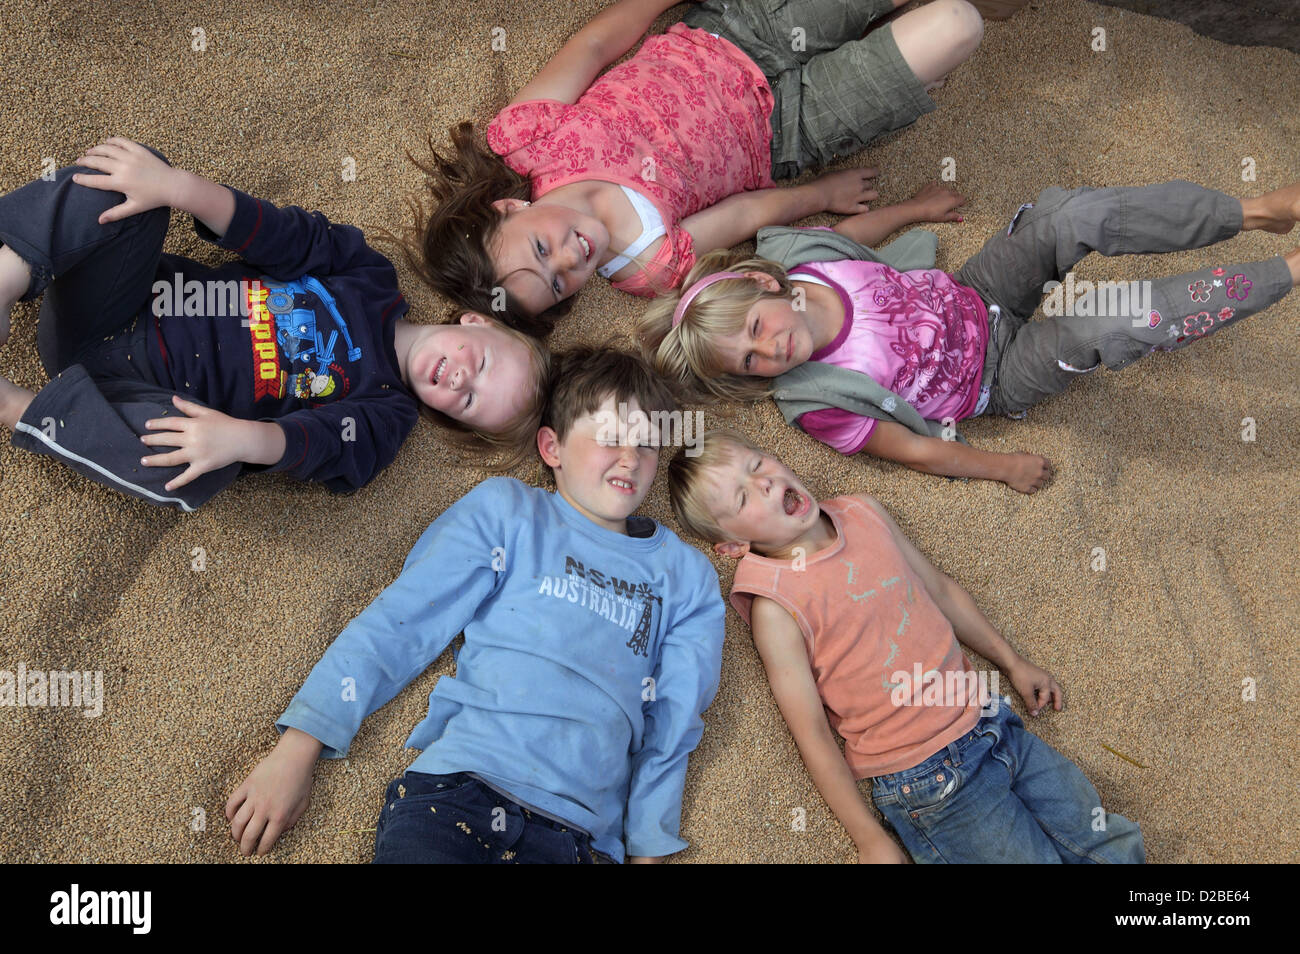 Glänzend, Deutschland, Dorfkinder liegen auf Weizenkoernern Stockfoto